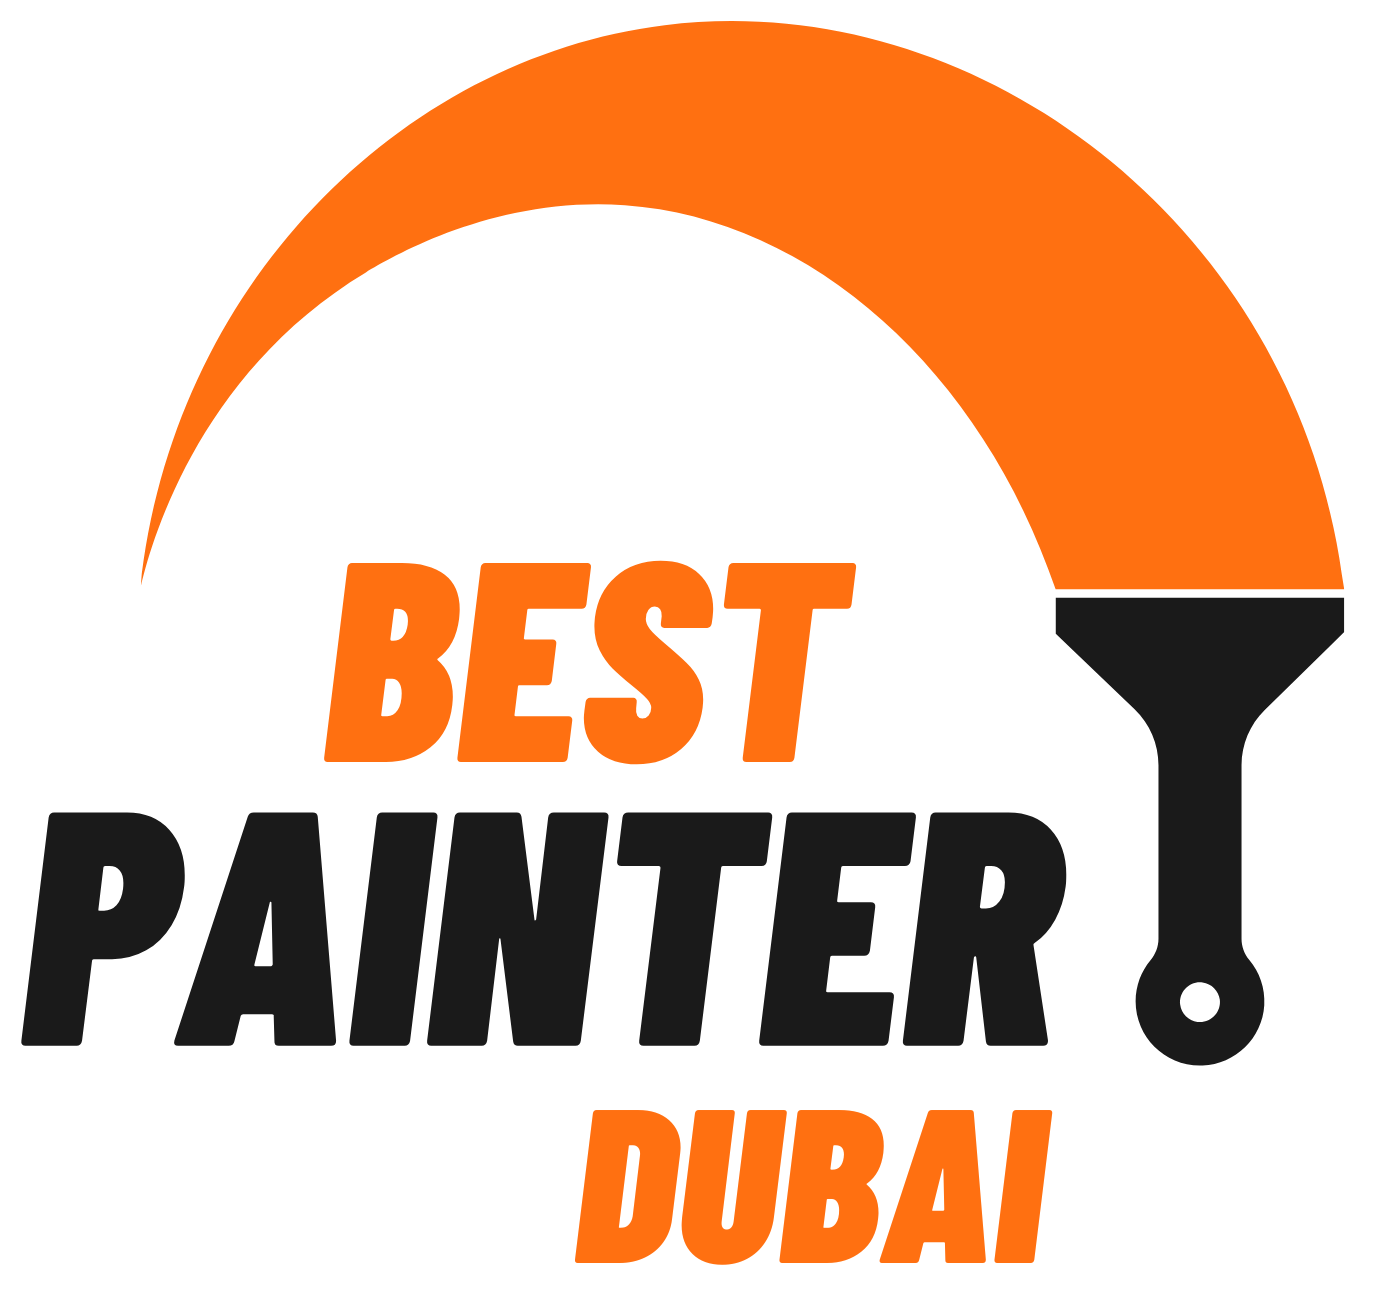 Best Painter Dubai